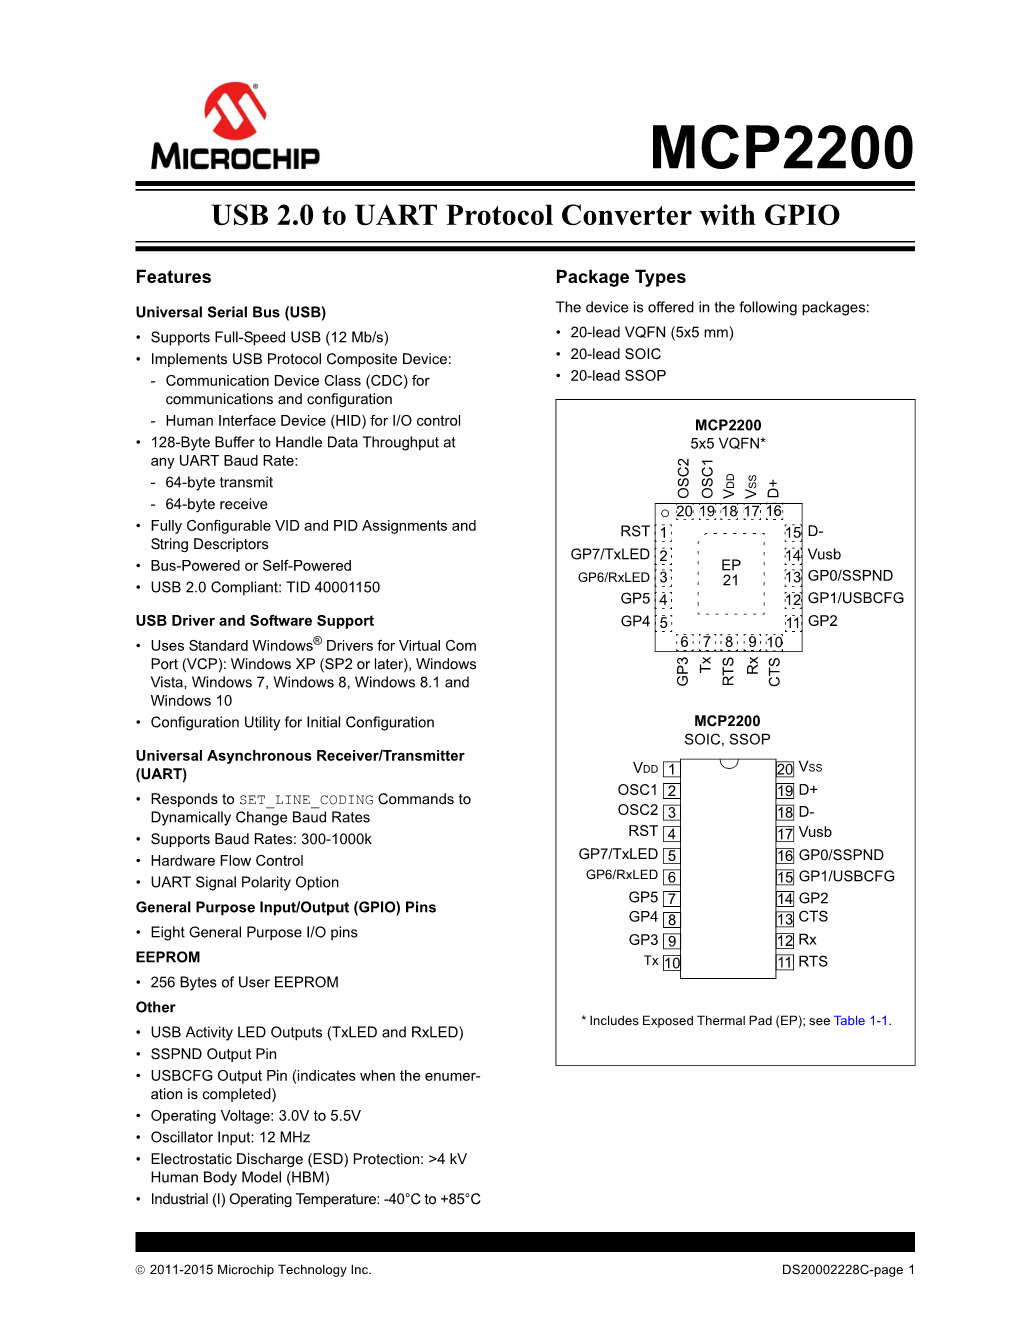 MCP2200 Data Sheet